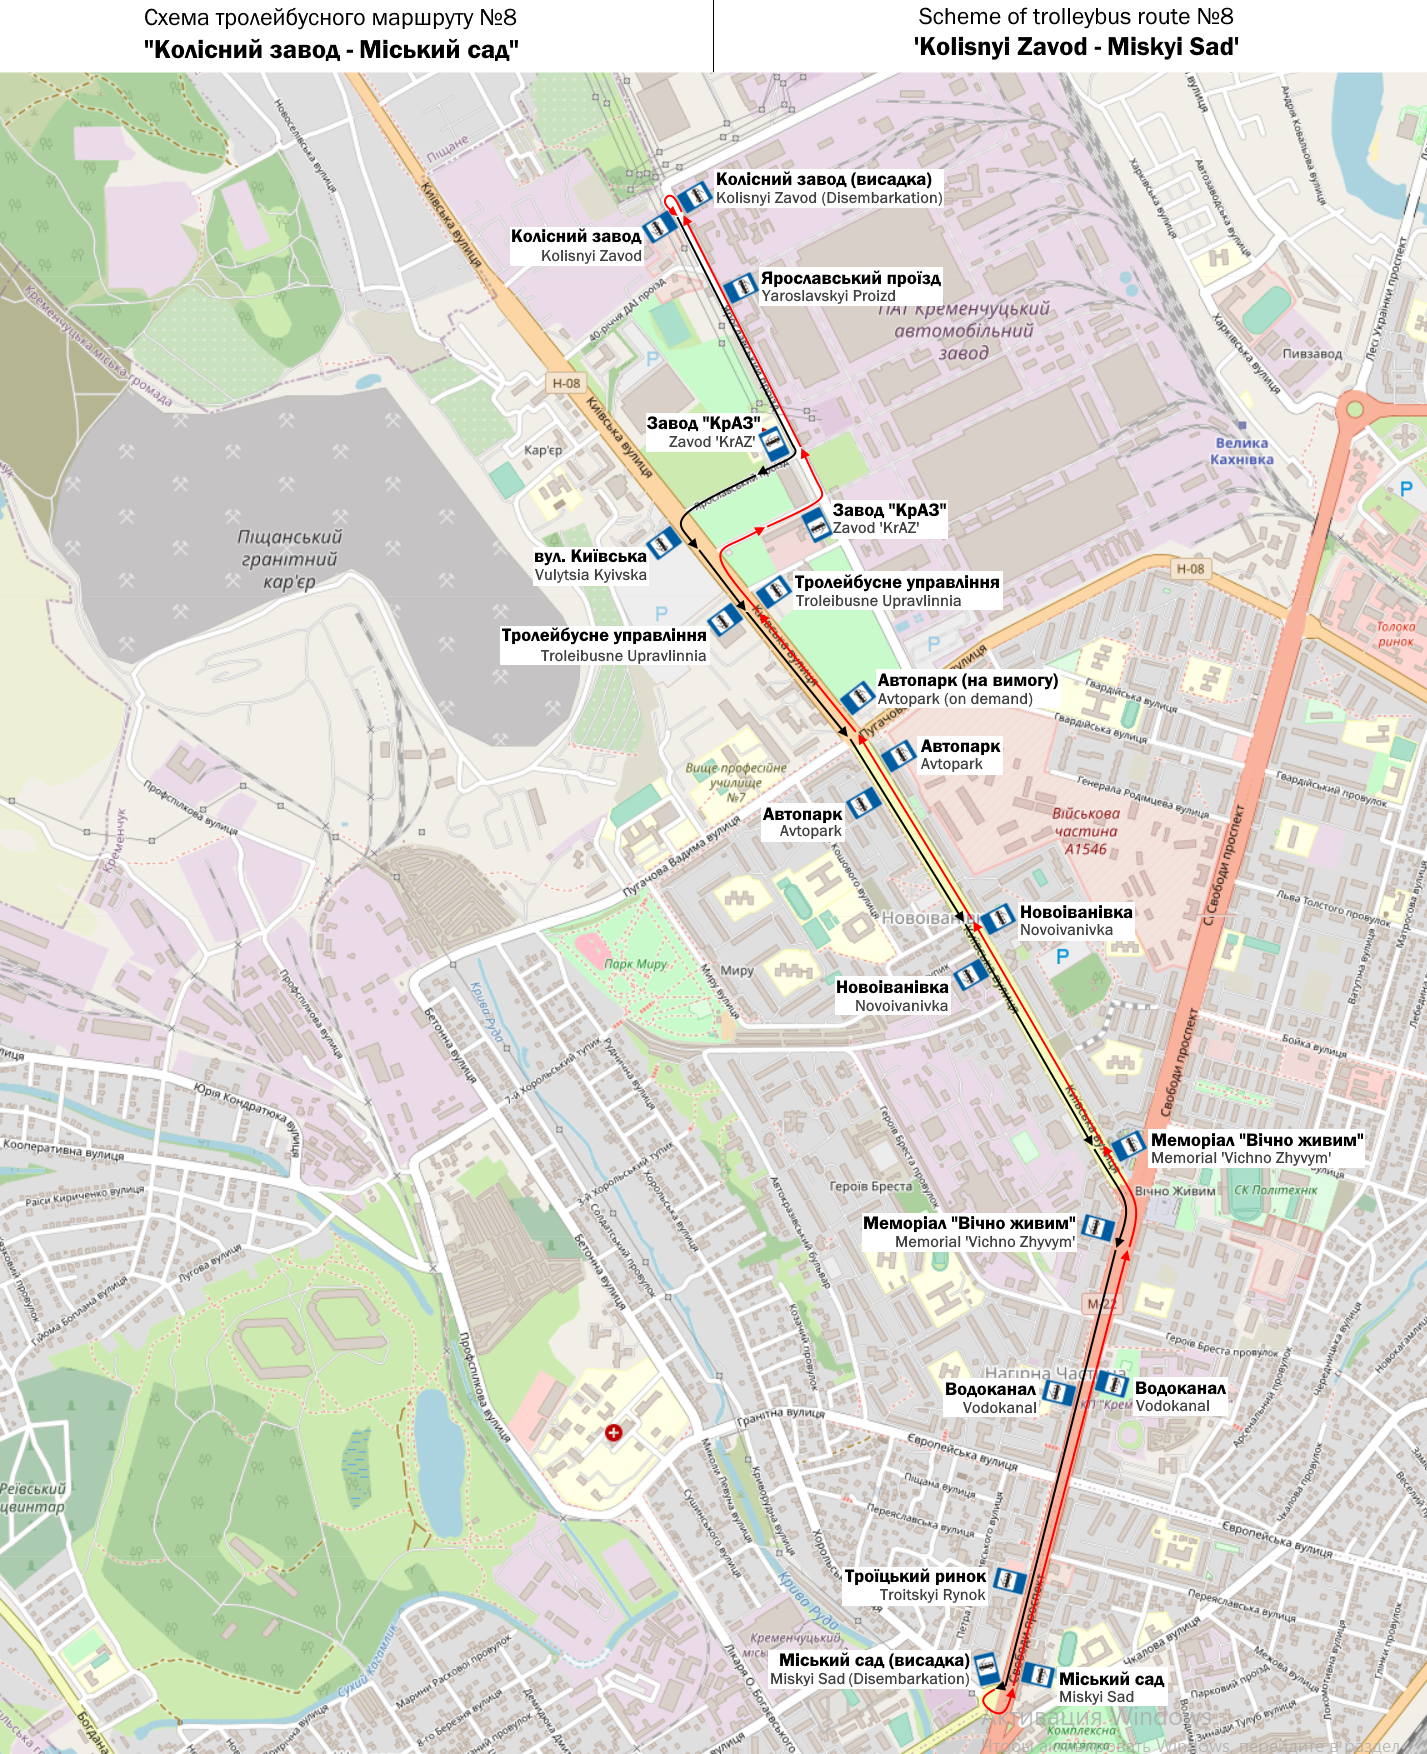 Krzemieńczuk — Individual Route Maps